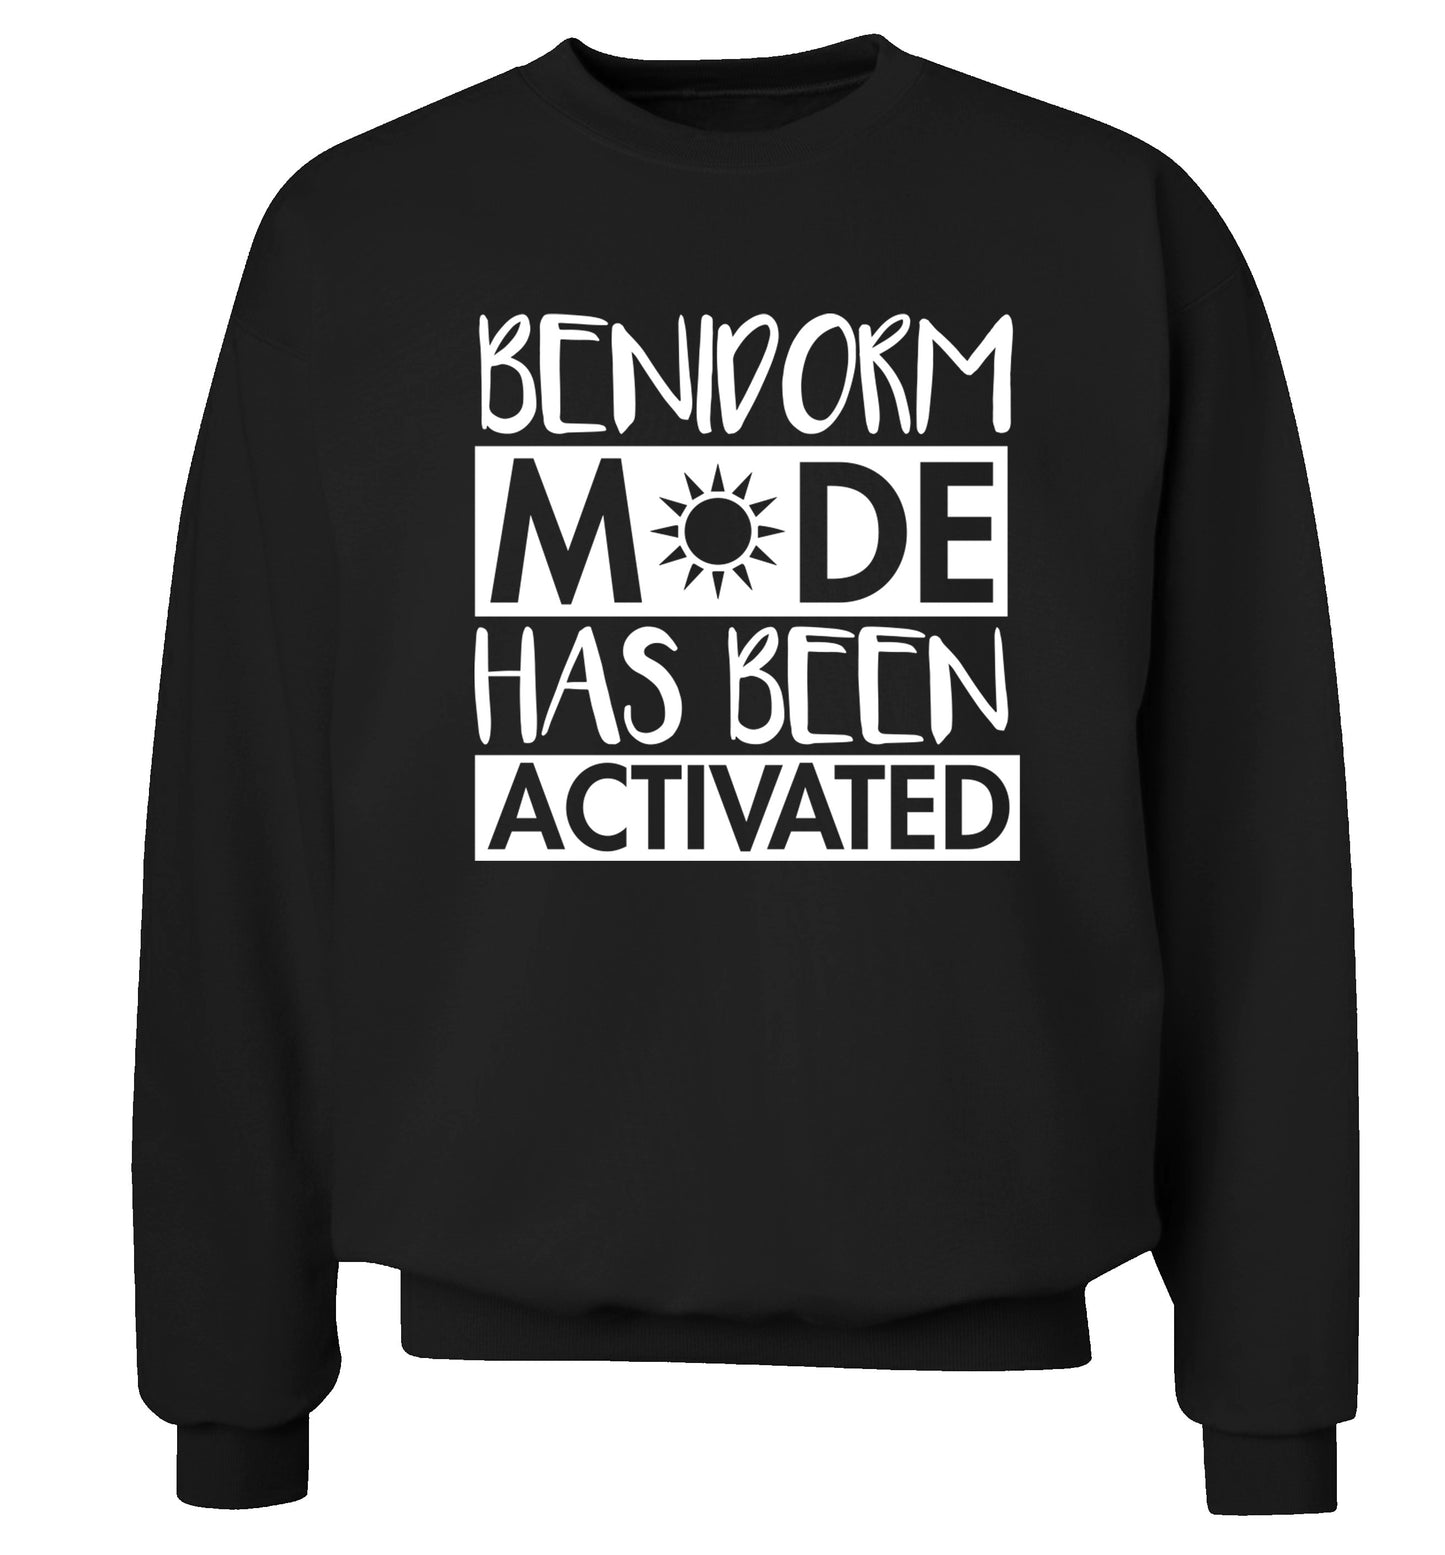 Benidorm mode has been activated Adult's unisex black Sweater 2XL